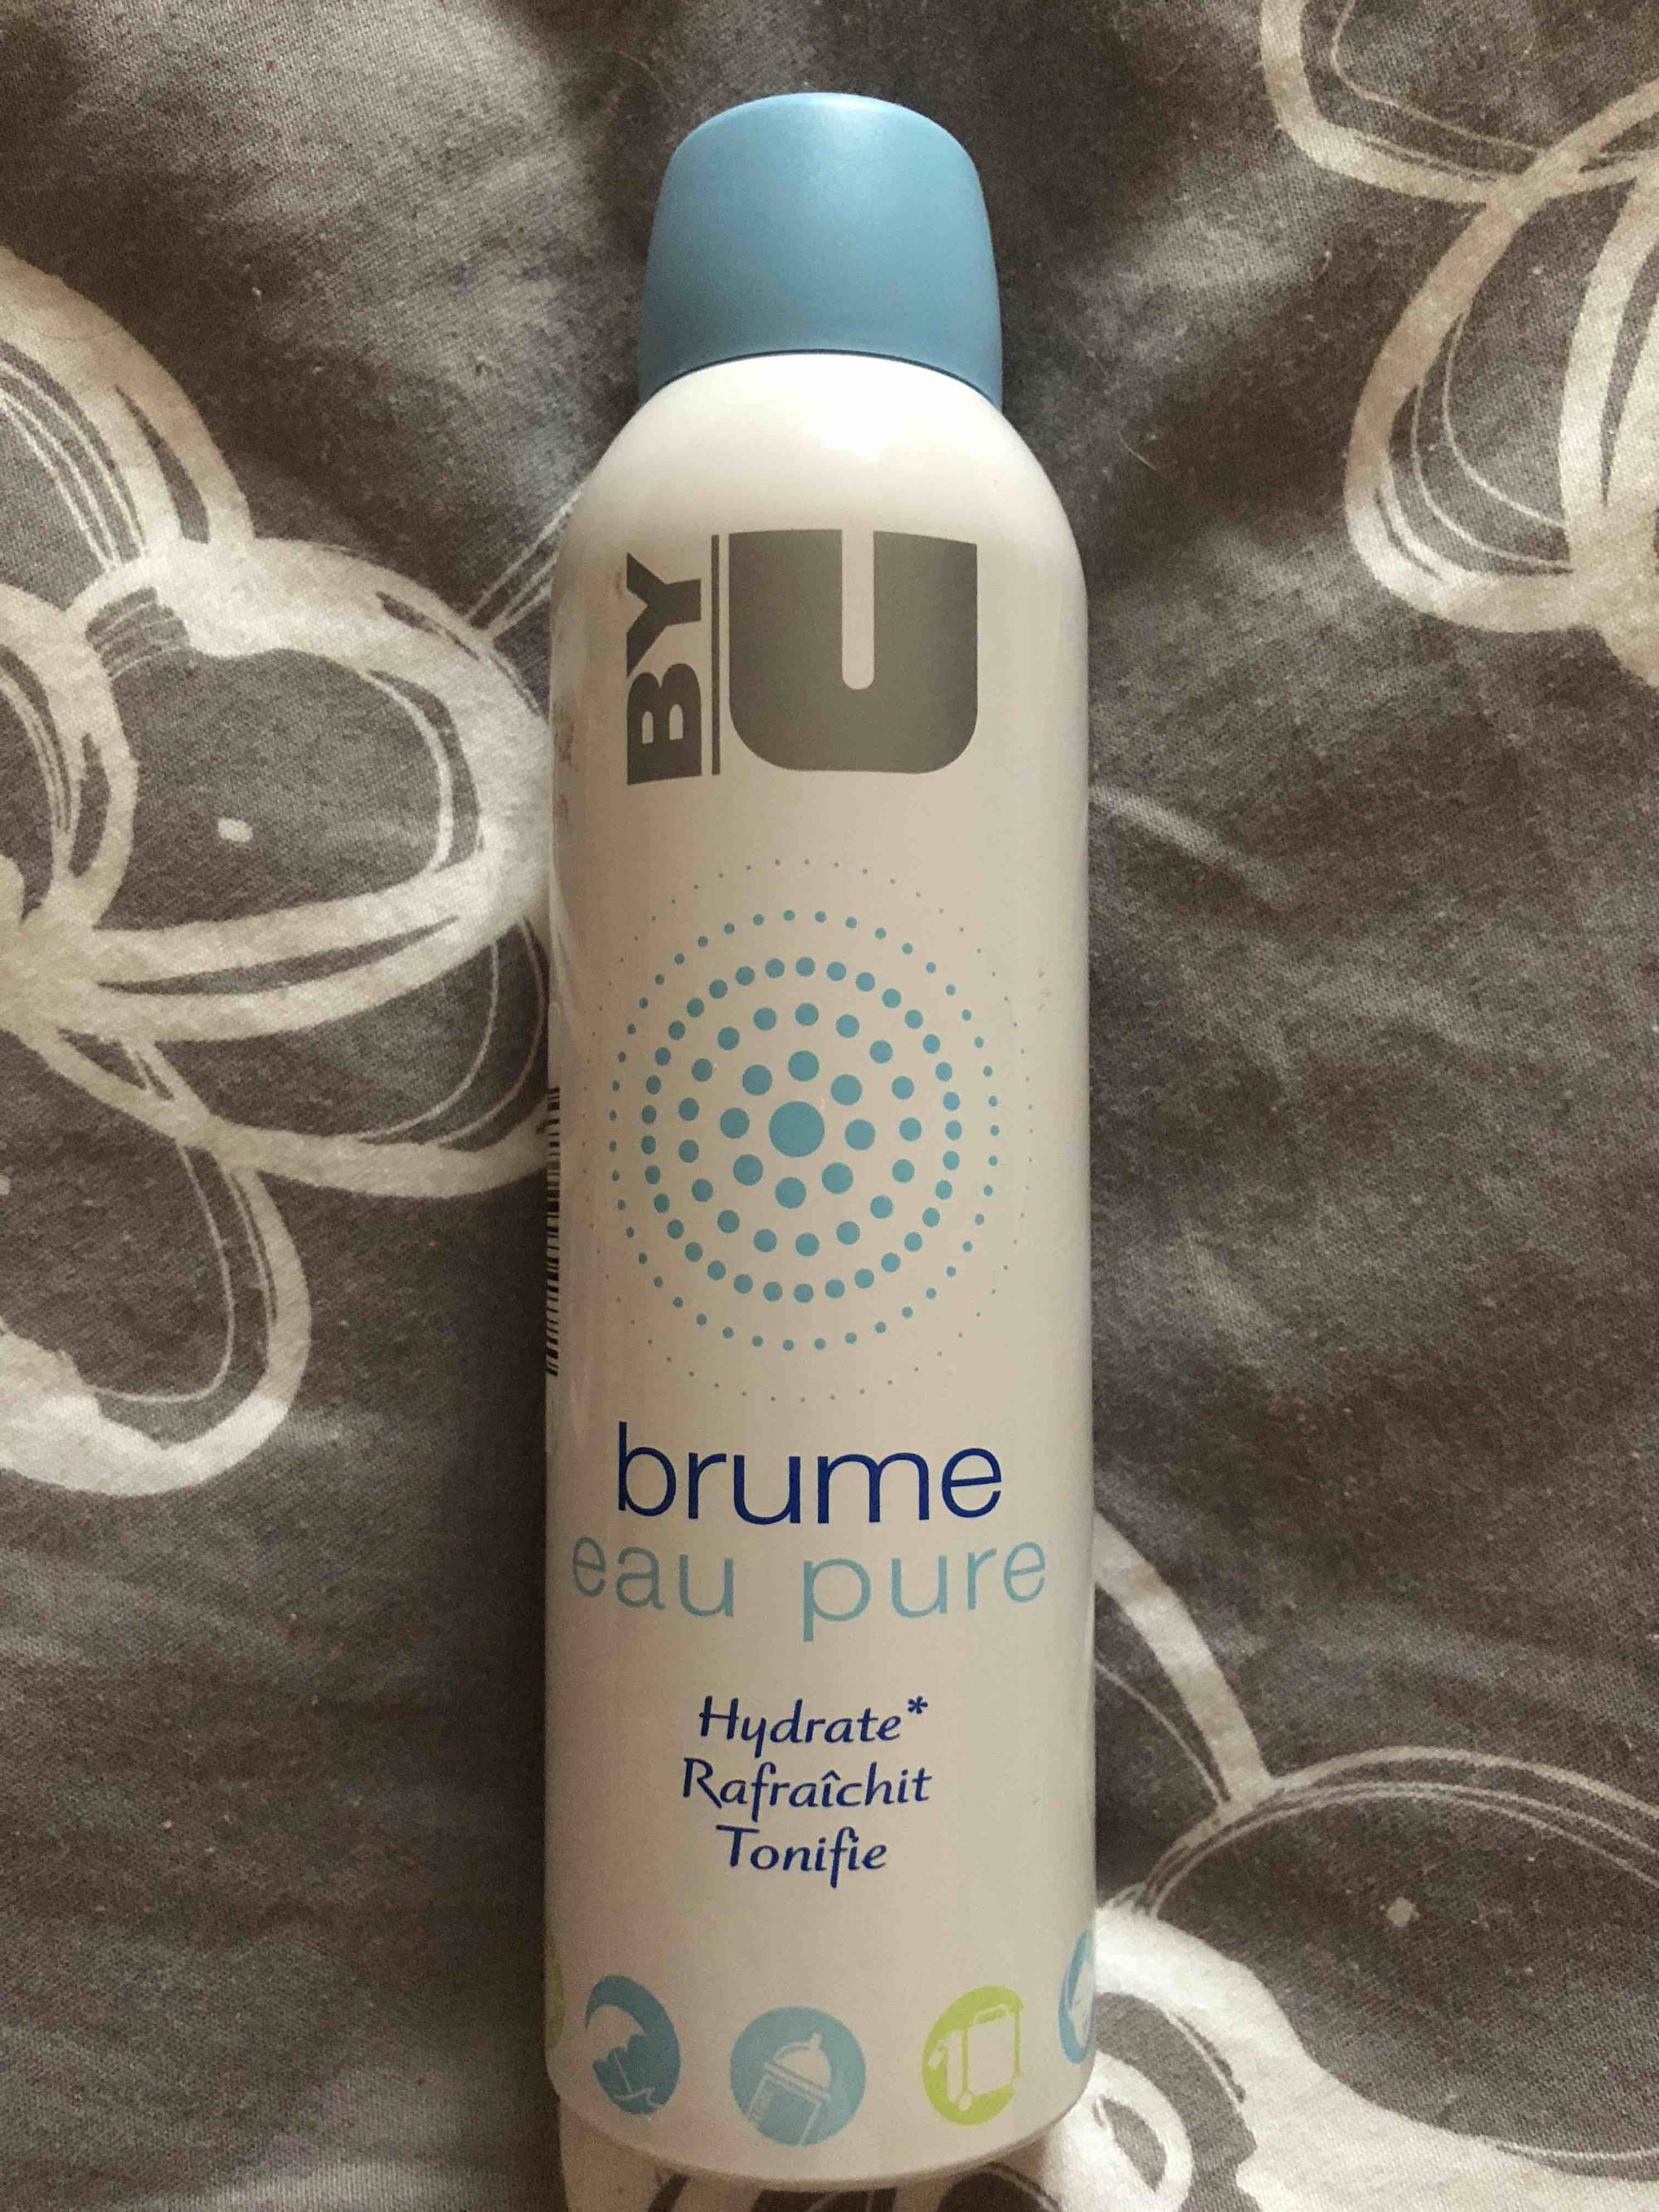 BY U - Brume - Eau pure hydrate rafraîchit tonifie